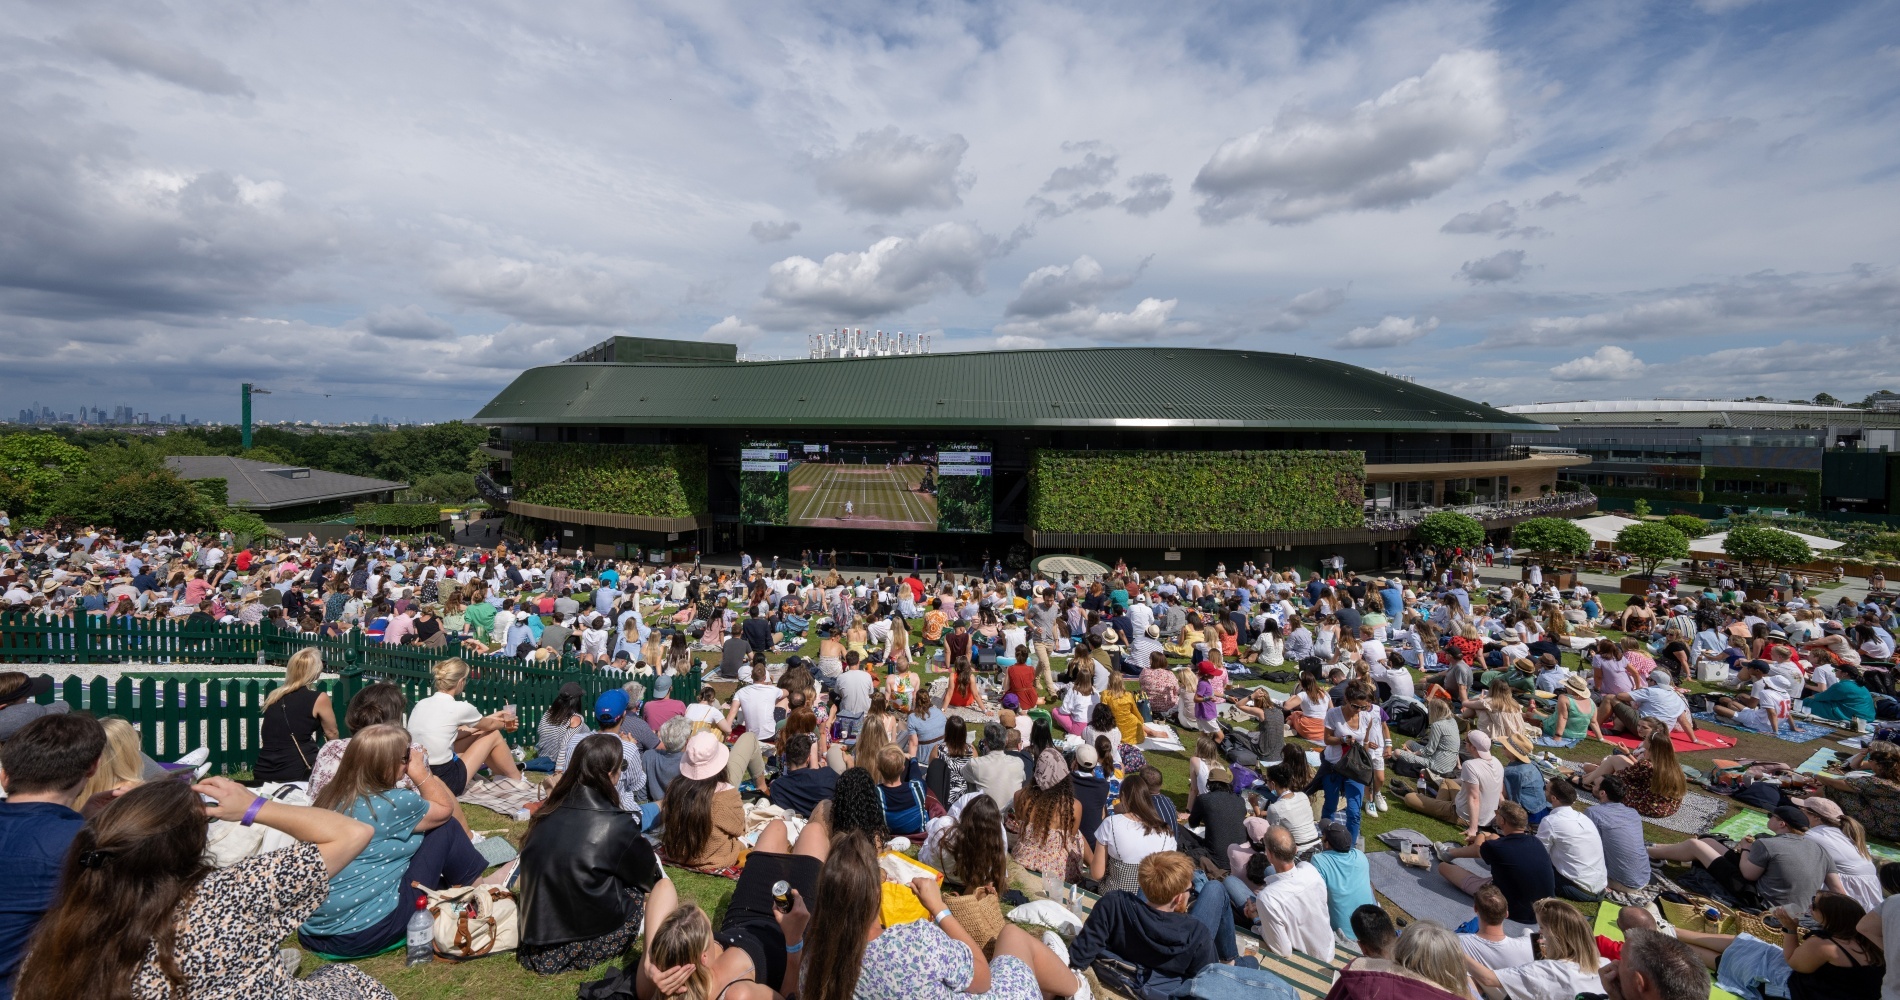 Crowds are back as Wimbledon returns to capacity, Wimbledon 2022